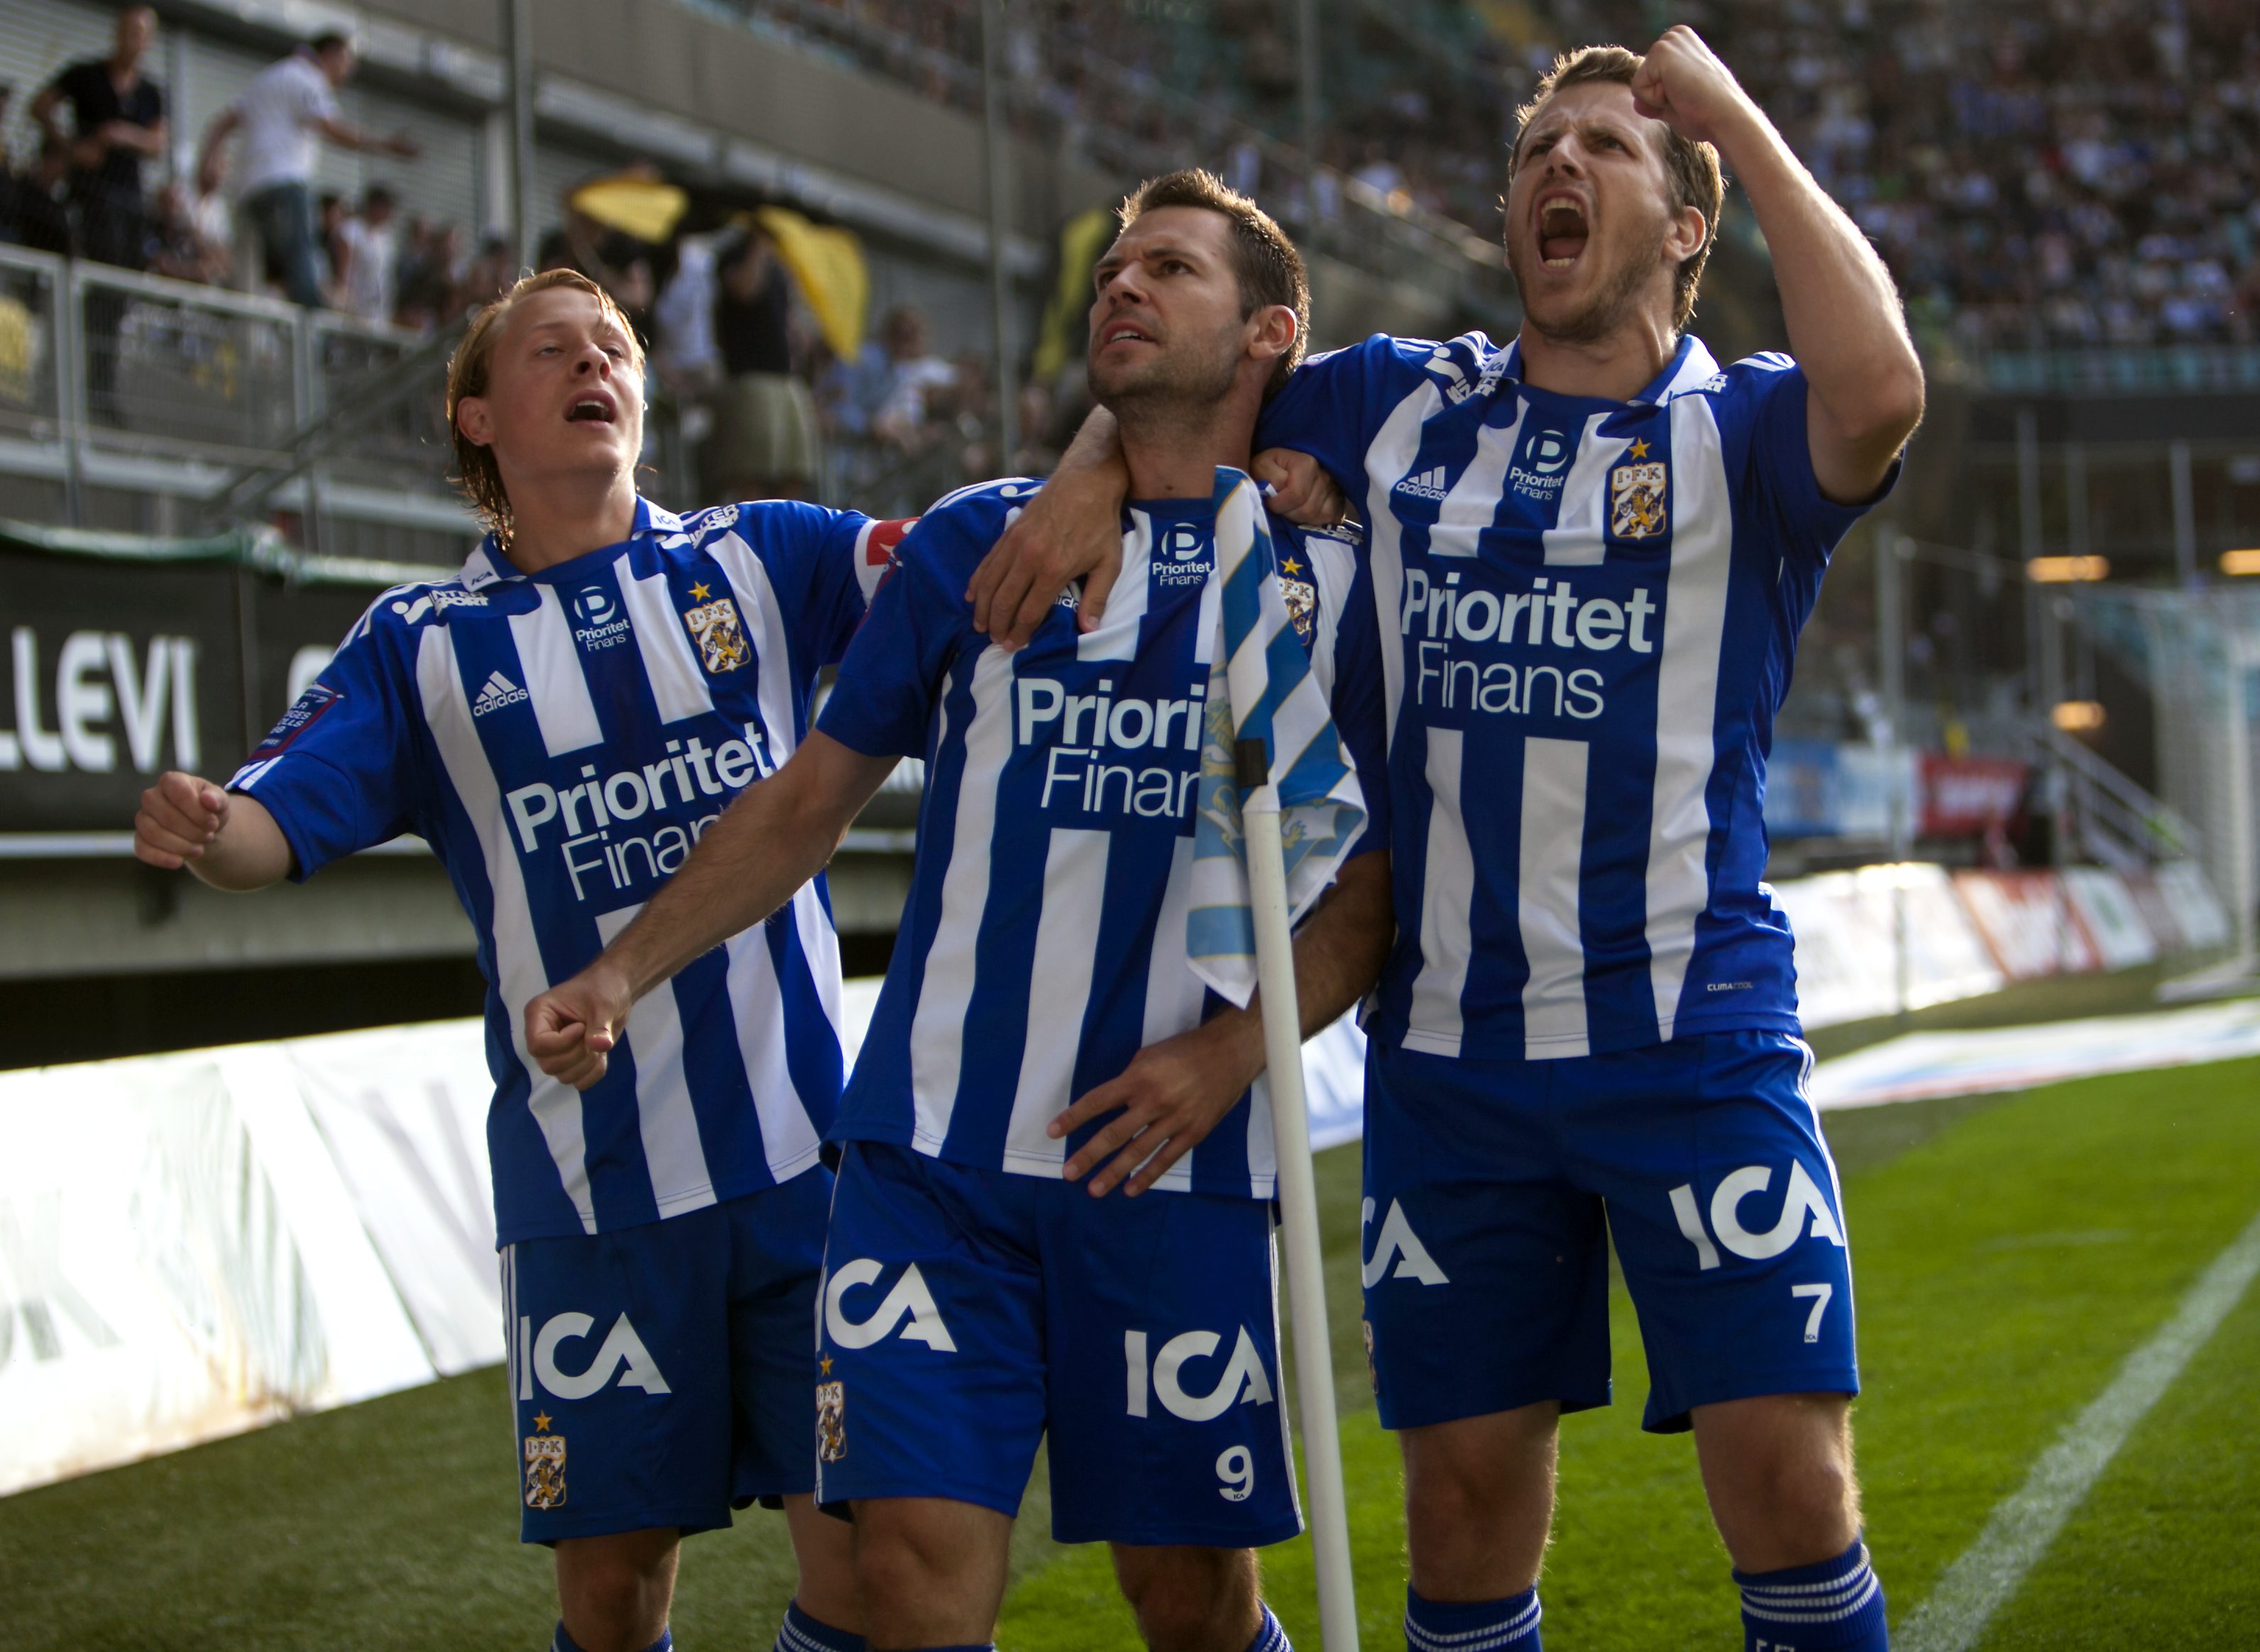 Stefan Selakovic, Tobias Hysén och Joel Allansson i IFK Göteborgs matchtröjor, med huvudsponsorn Prioritet Finans på bröstet.